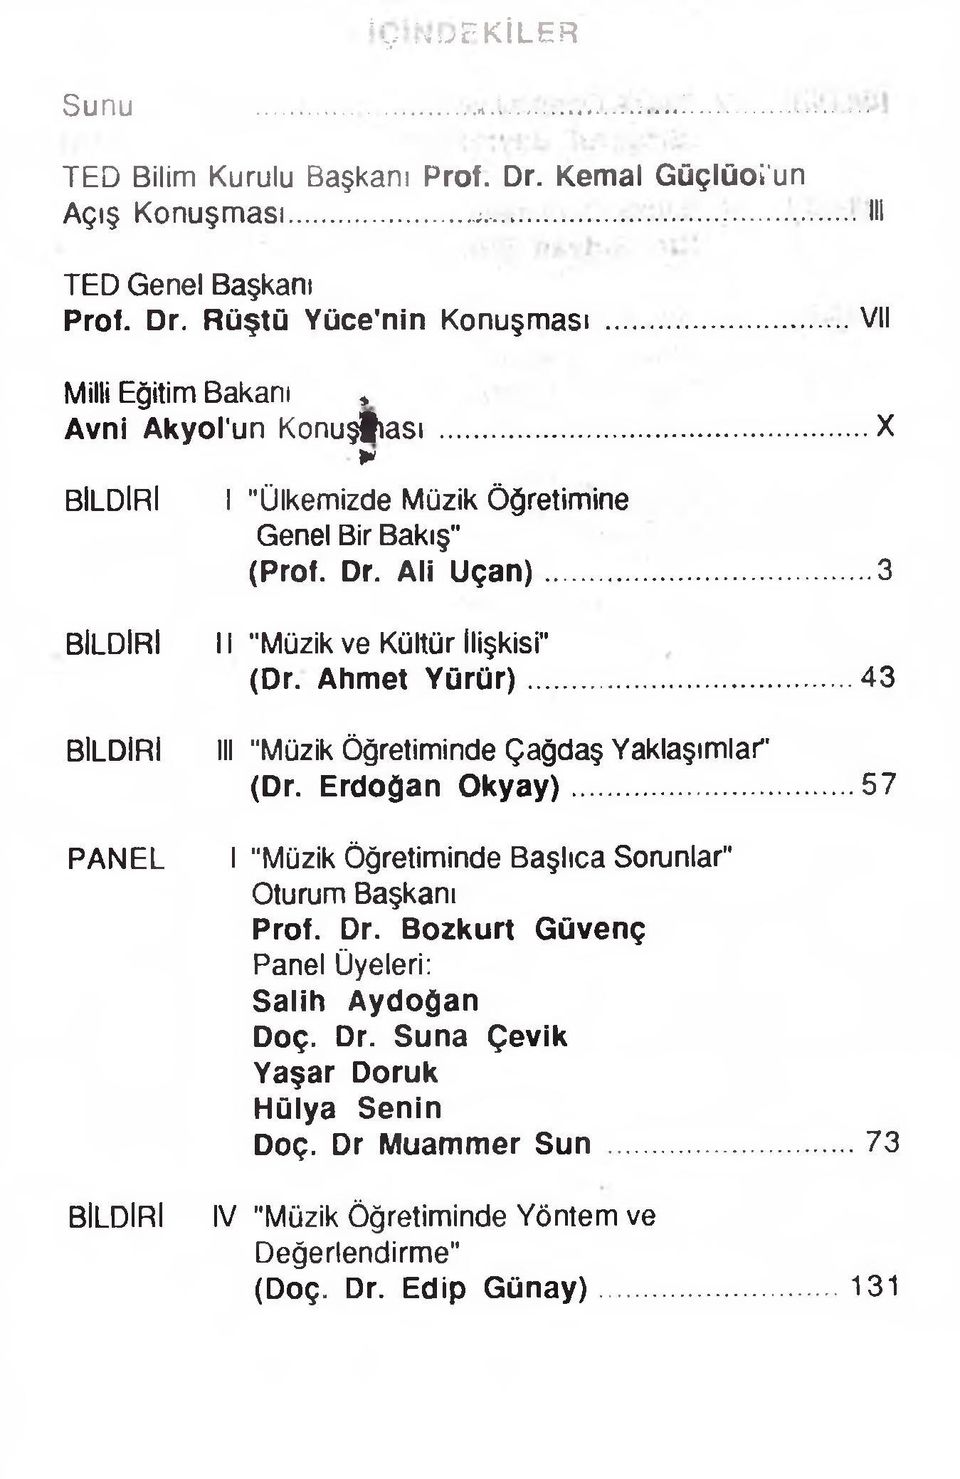 .. 3 BİLDİRİ BİLDİRİ PANEL BİLDİRİ 11 "Müzik ve Kültür ilişkisi" (Dr. Ahmet Yürür)...43 III "Müzik Öğretiminde Çağdaş Yaklaşımlar" (Dr. Erdoğan Okyay).